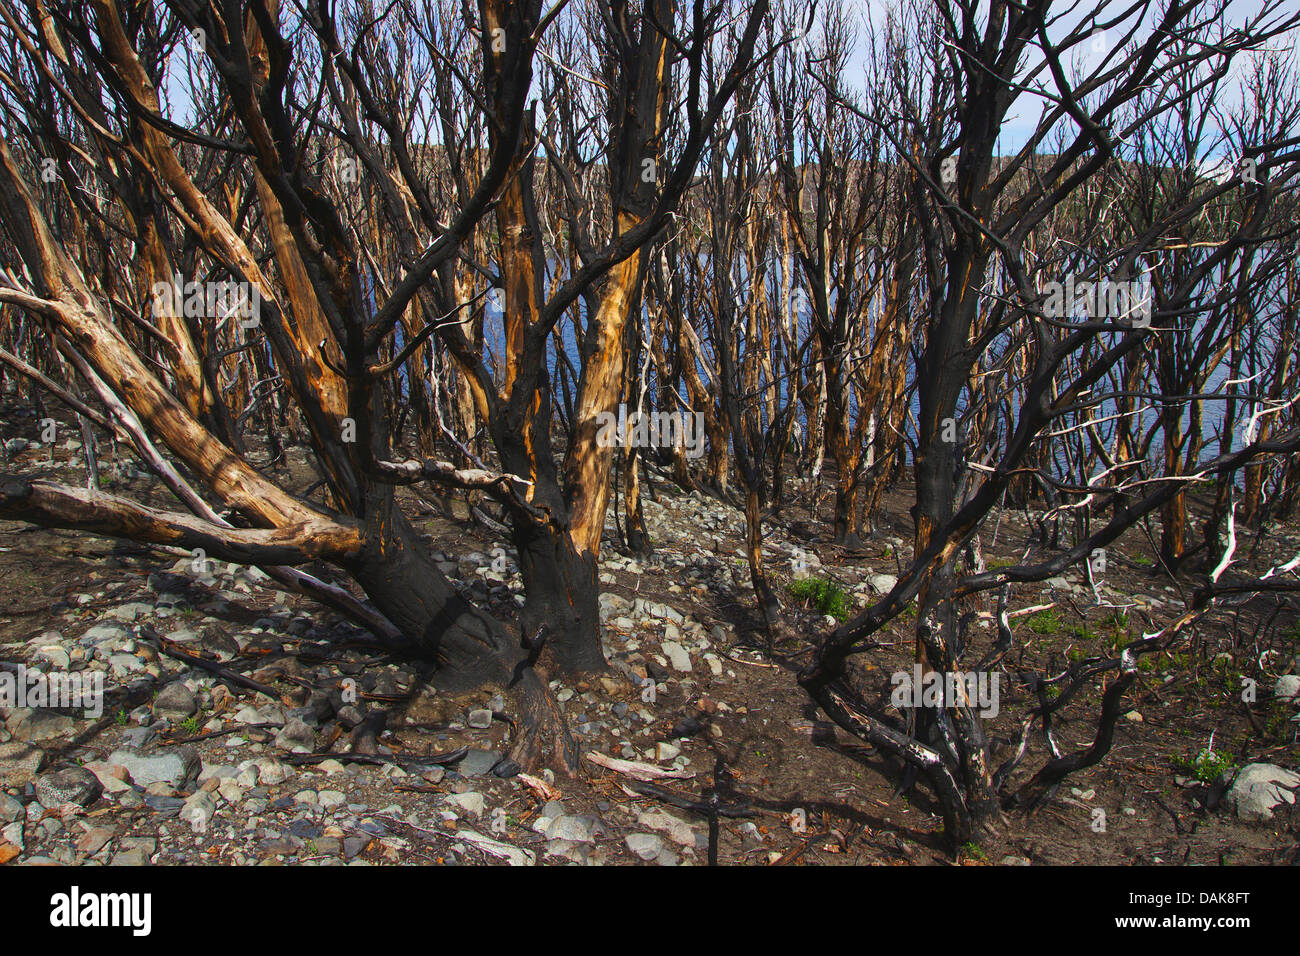 Los arbustos quemados tras el fuego salvaje, Chile, Patagonia, Parque Nacional Torres del Paine Foto de stock